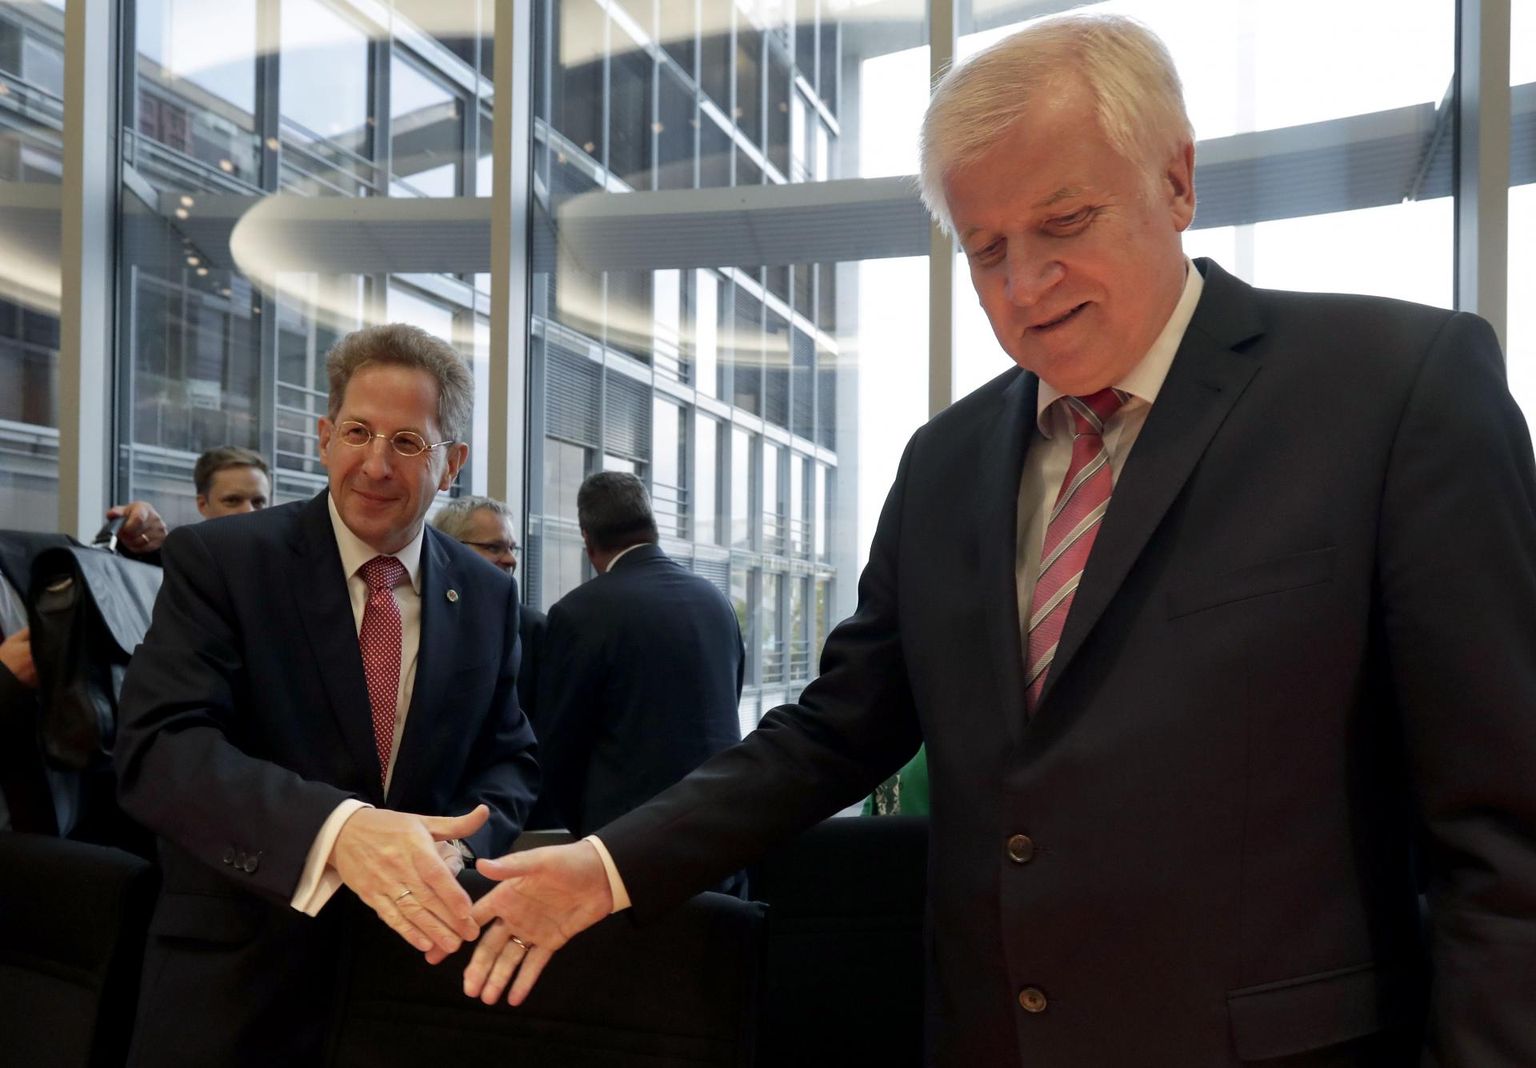 BfV endine juht Hans-Georg Maassen (vasakul) jätkab vastuolulistest väidetest hoolimata siseminister Horst Seehoferi alluvuses siseministeeriumi riigisekretärina.